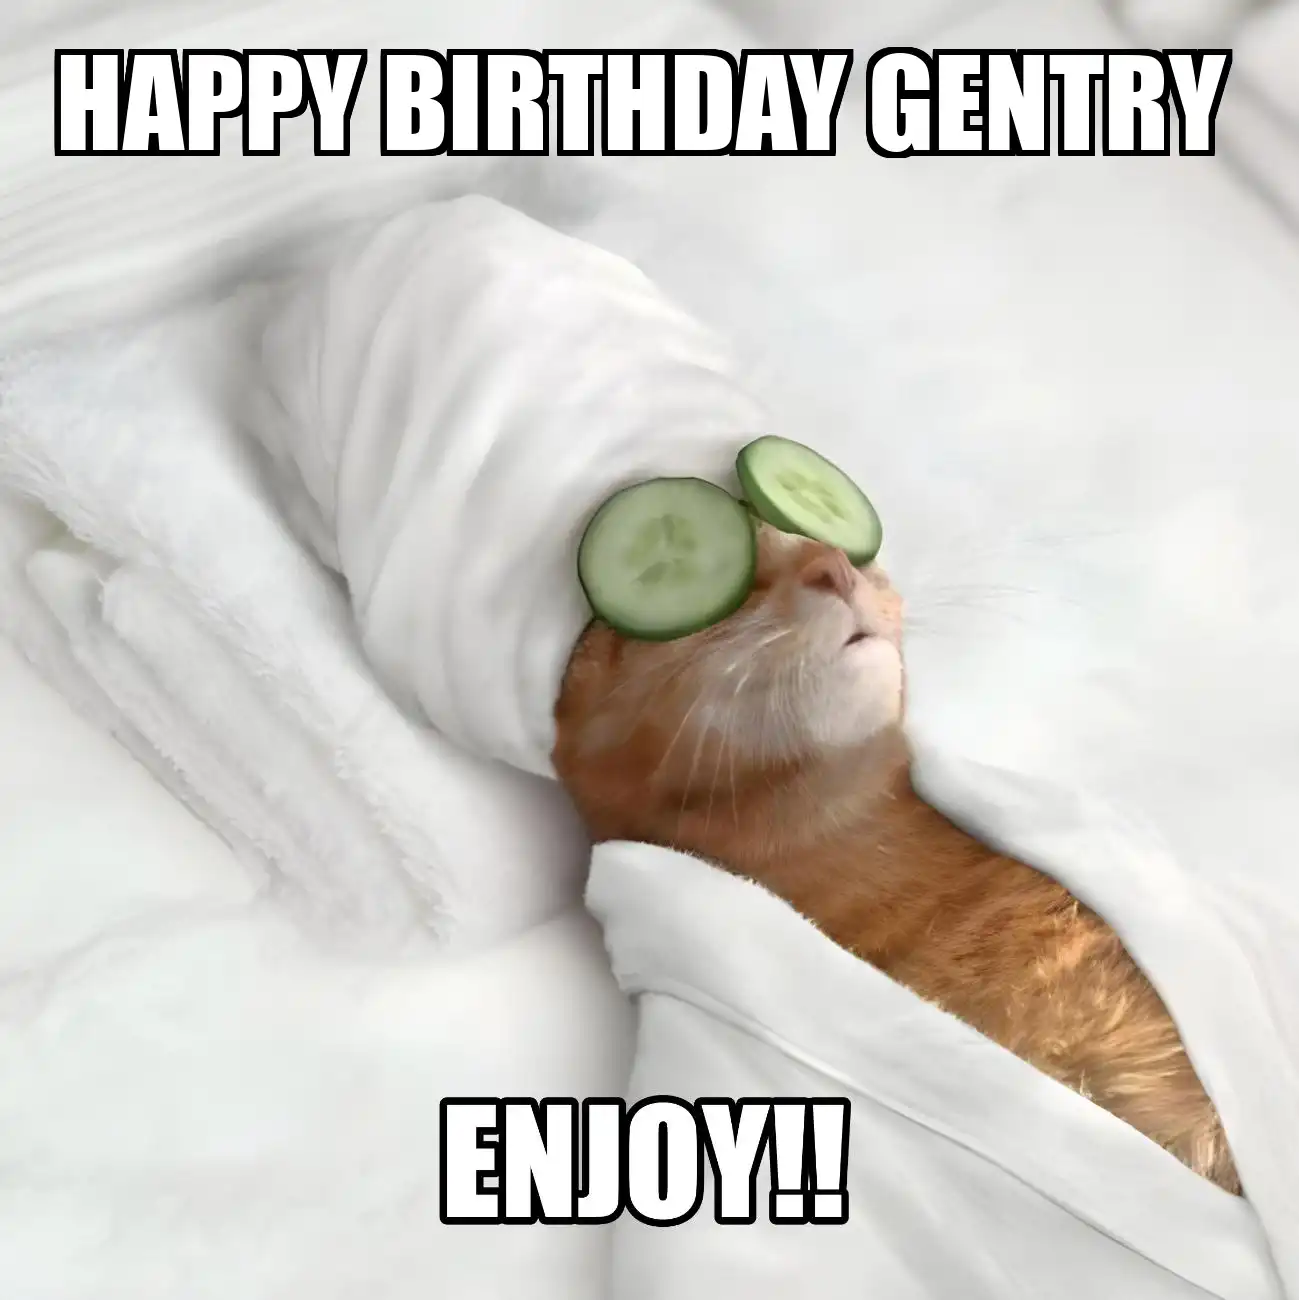 Happy Birthday Gentry Enjoy Cat Meme